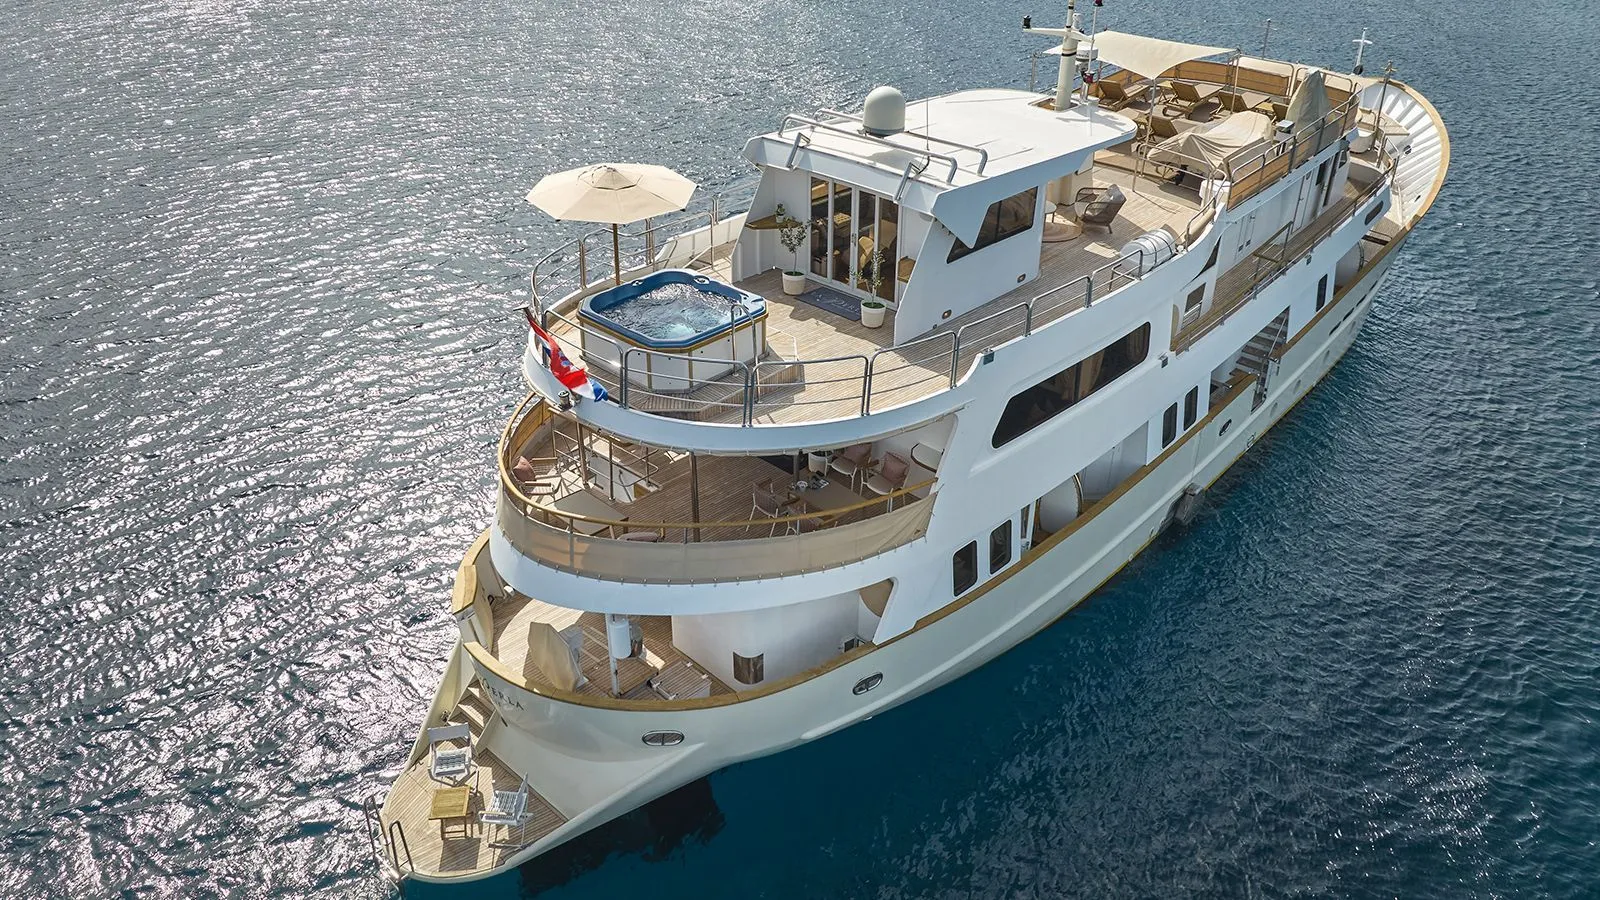 LA PERLA Yacht for Sale - IYC